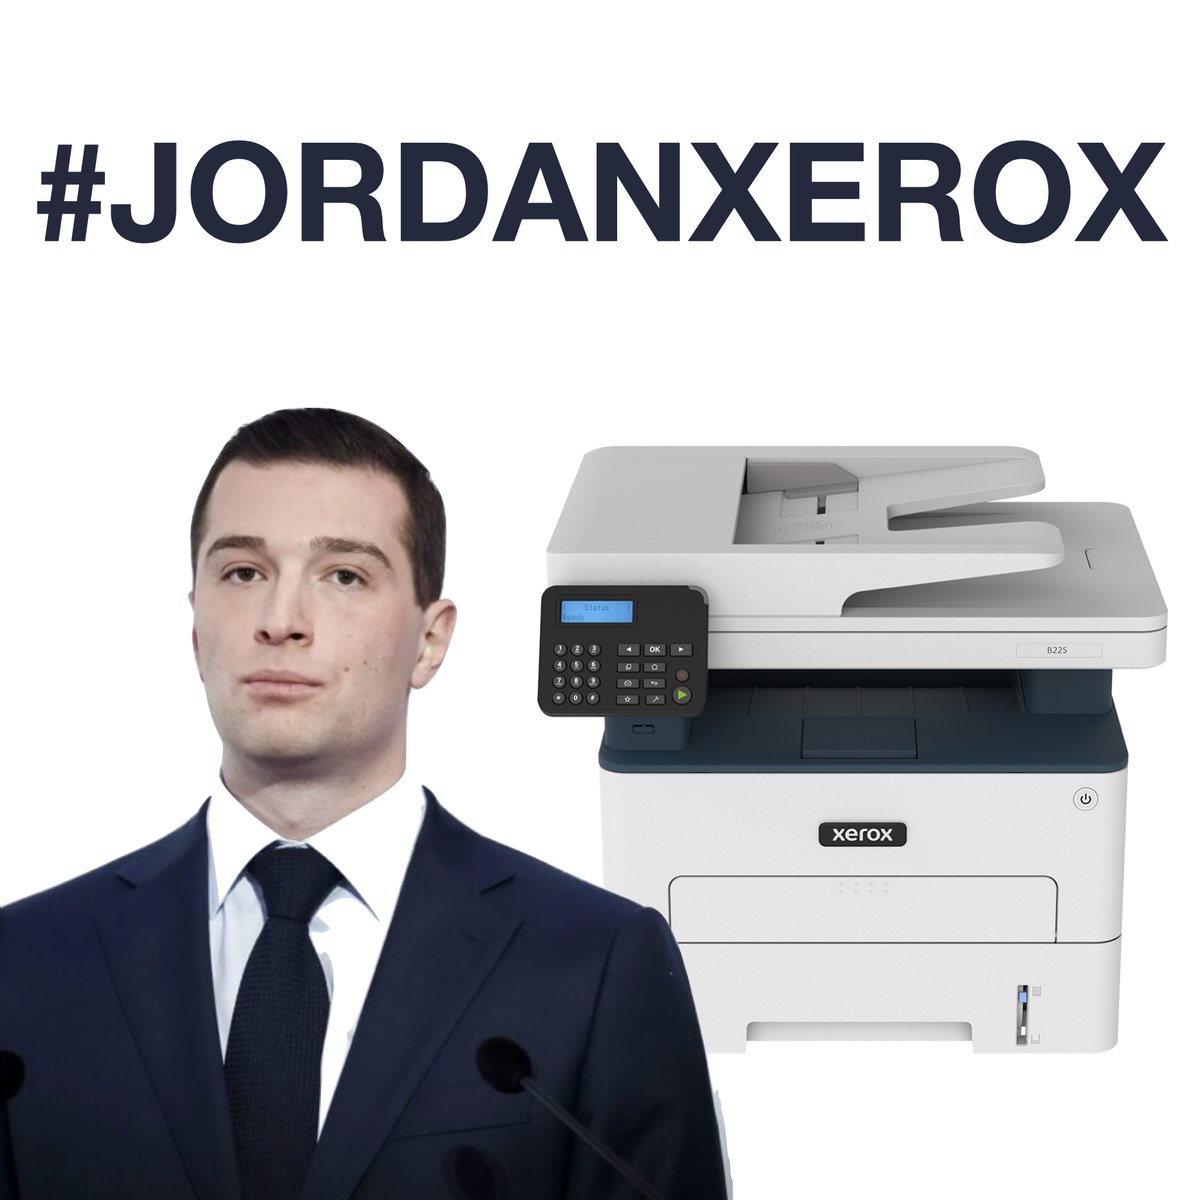 Quelle est la différence entre Jordan Bardella et cette superbe photocopieuse multifonctions ? Les deux copient indistinctement les discours de Macron ou Zemmour , la deuxième envoie en plus des fax. #JordanXerox